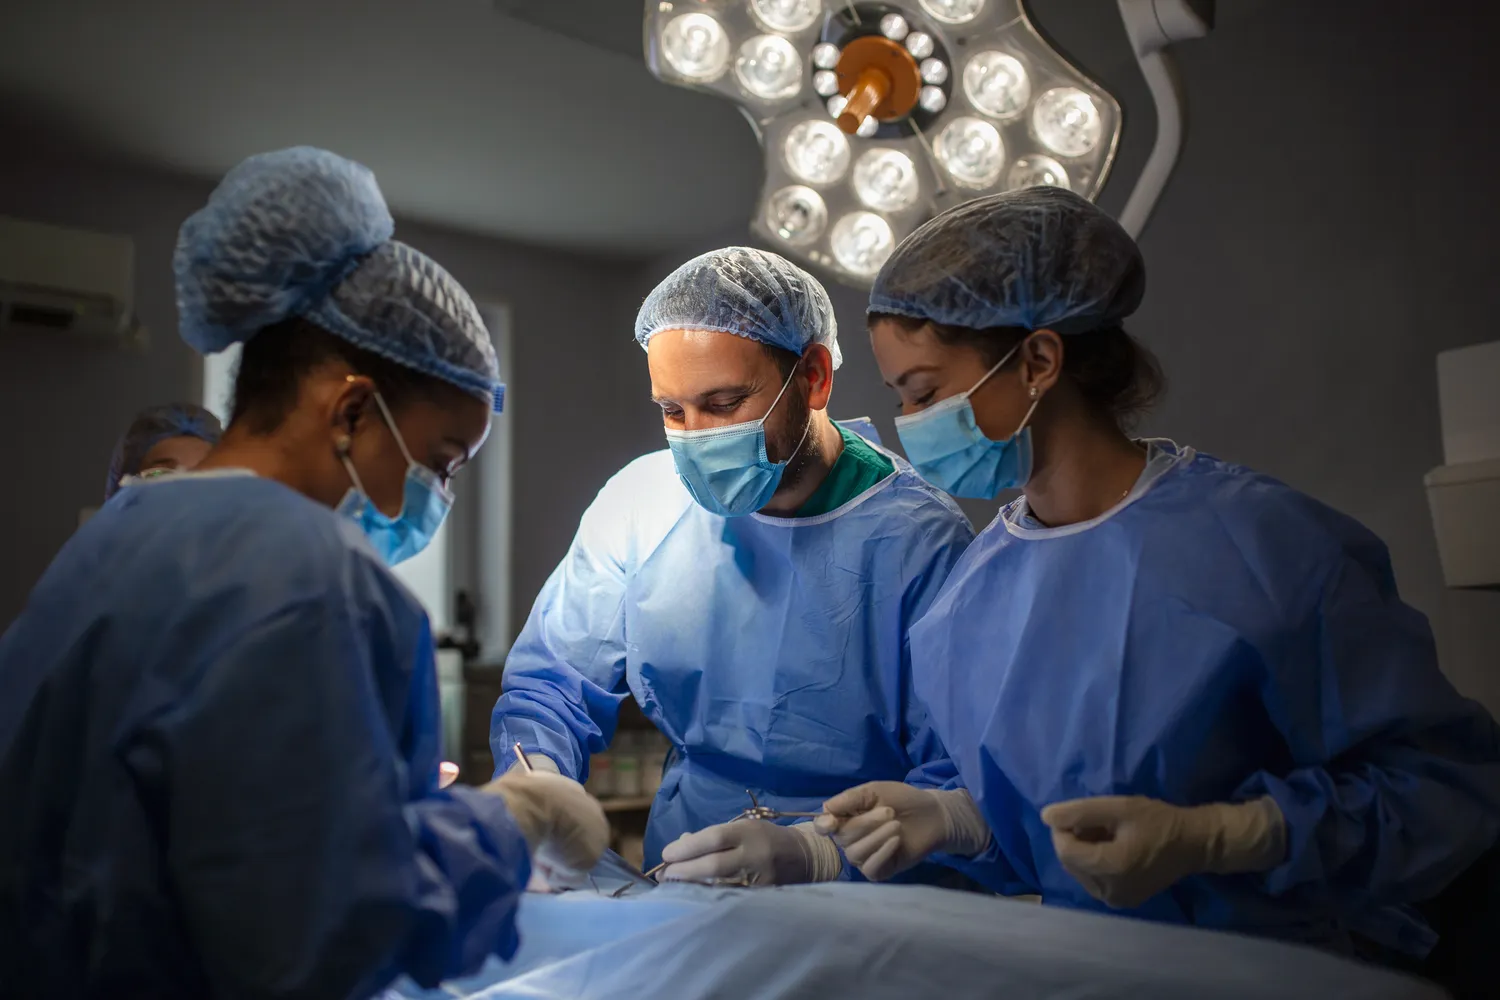 Chirurgia plastyczna – najpopularniejsze zabiegi, możliwe powikłania, kiedy z niej skorzystać?